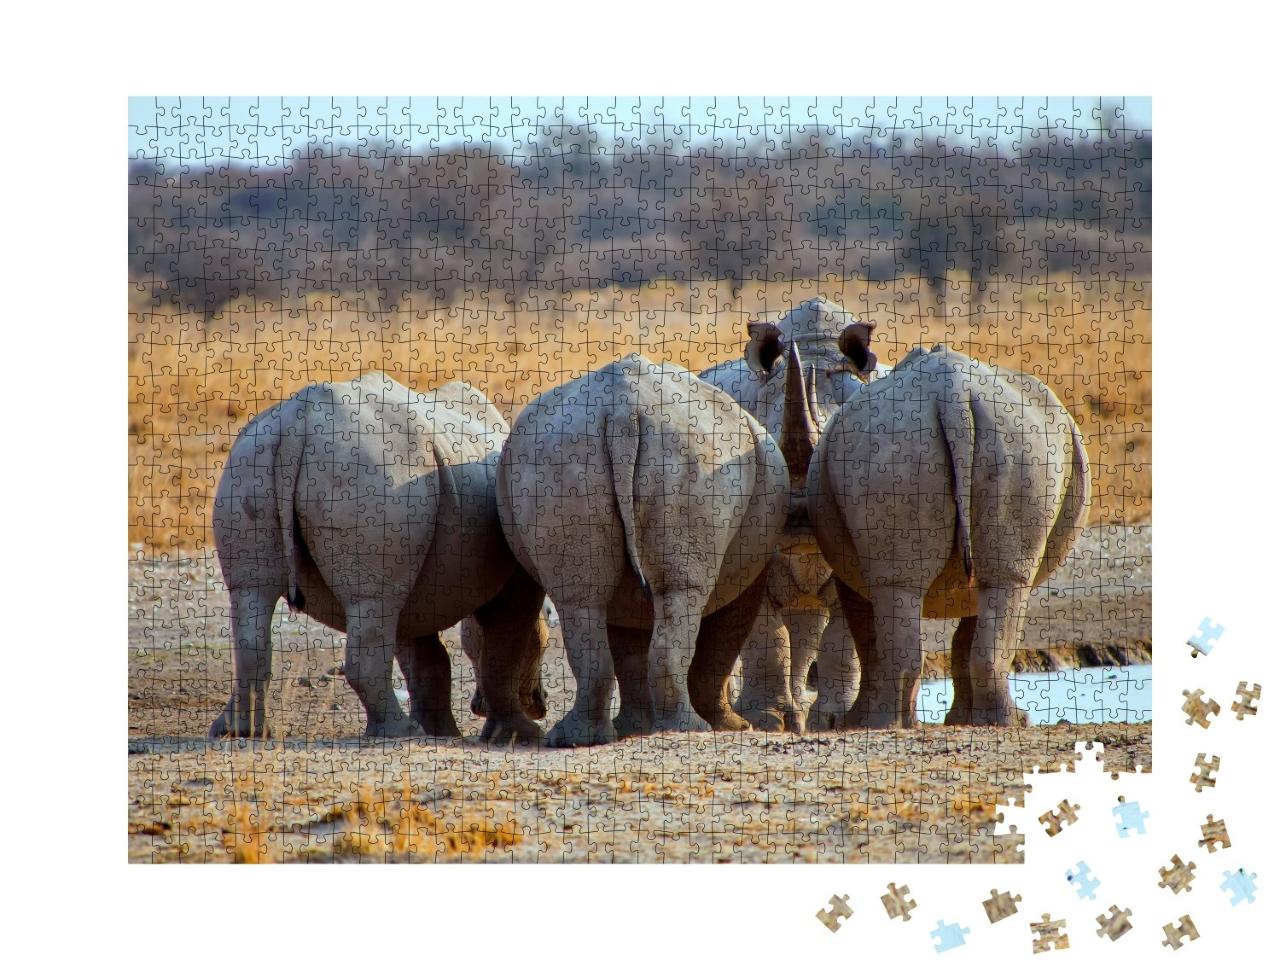 Puzzle de 1000 pièces « Trois rhinocéros blancs, Botswana Afrique »